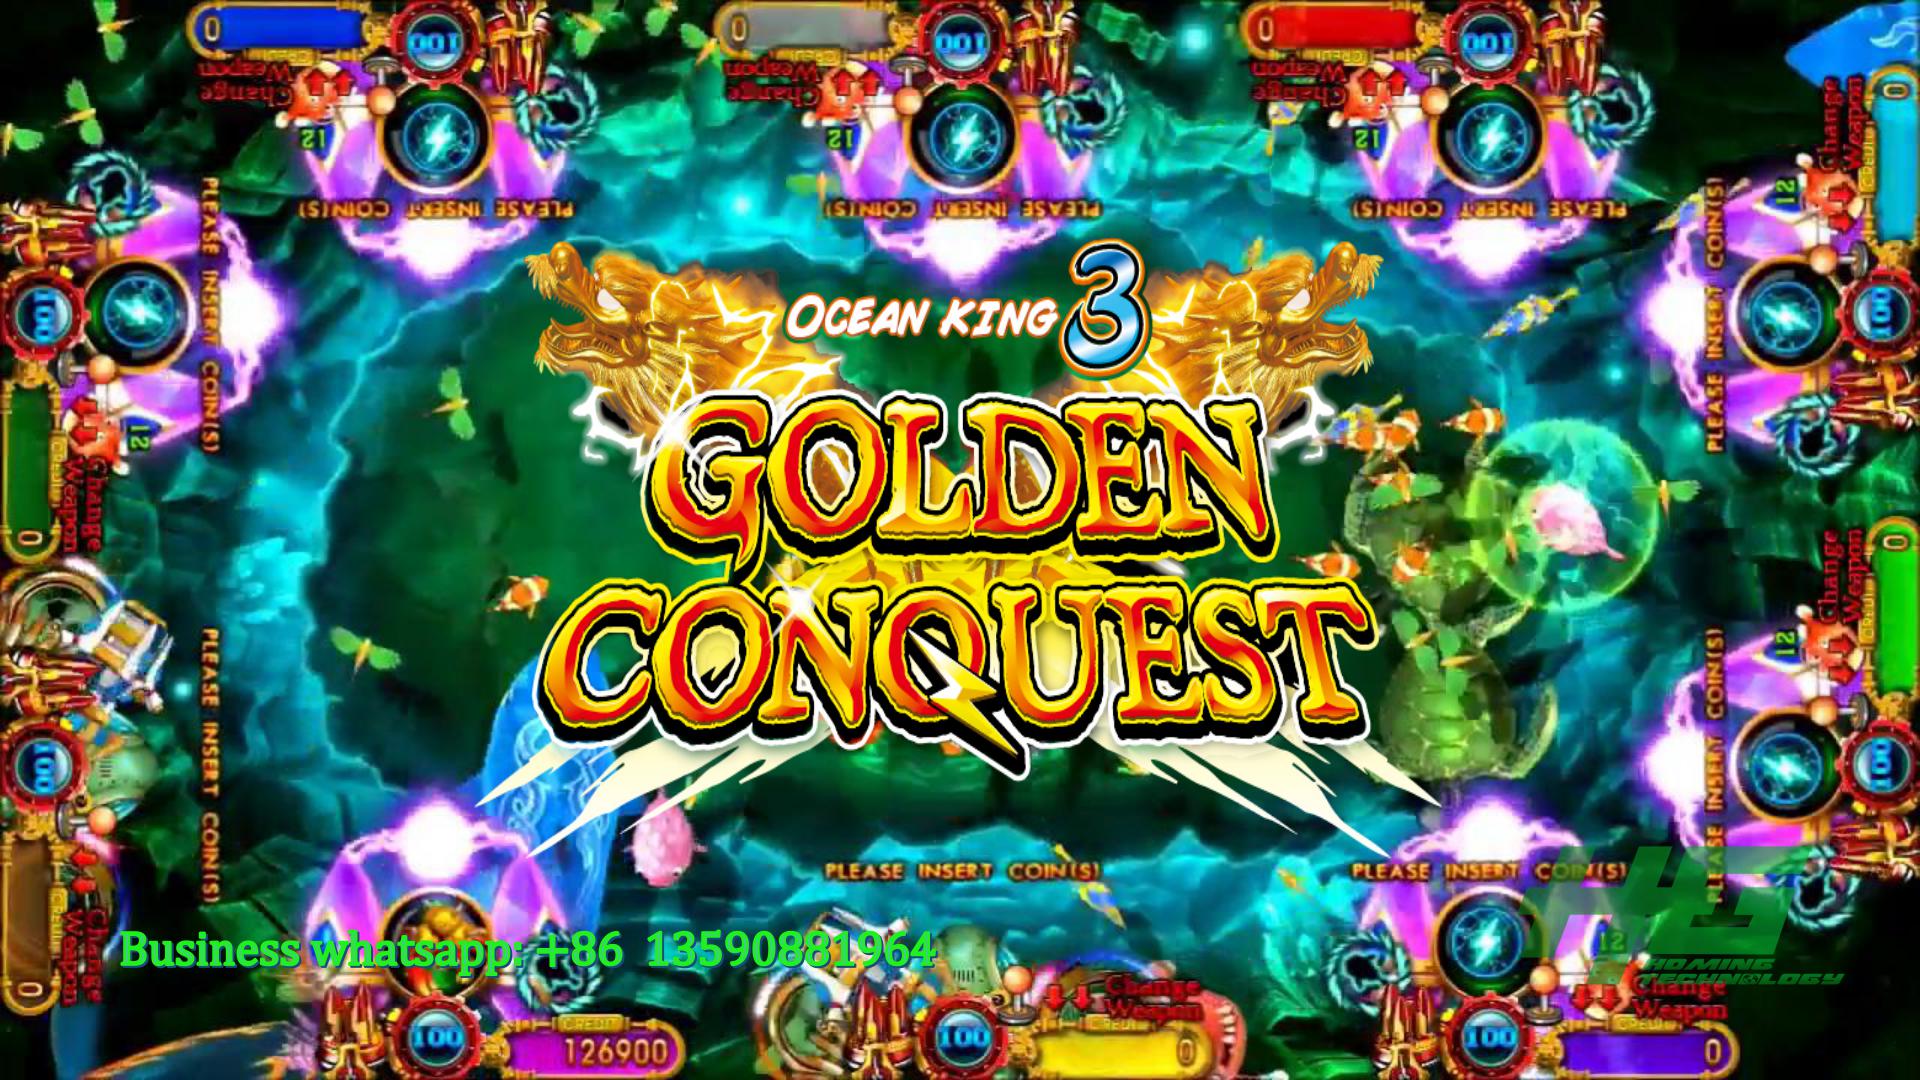 IGS Original Ocean King 3 Golden Conquest,Ocean King 3 Plus Fish Casino Game Machine For Sale 